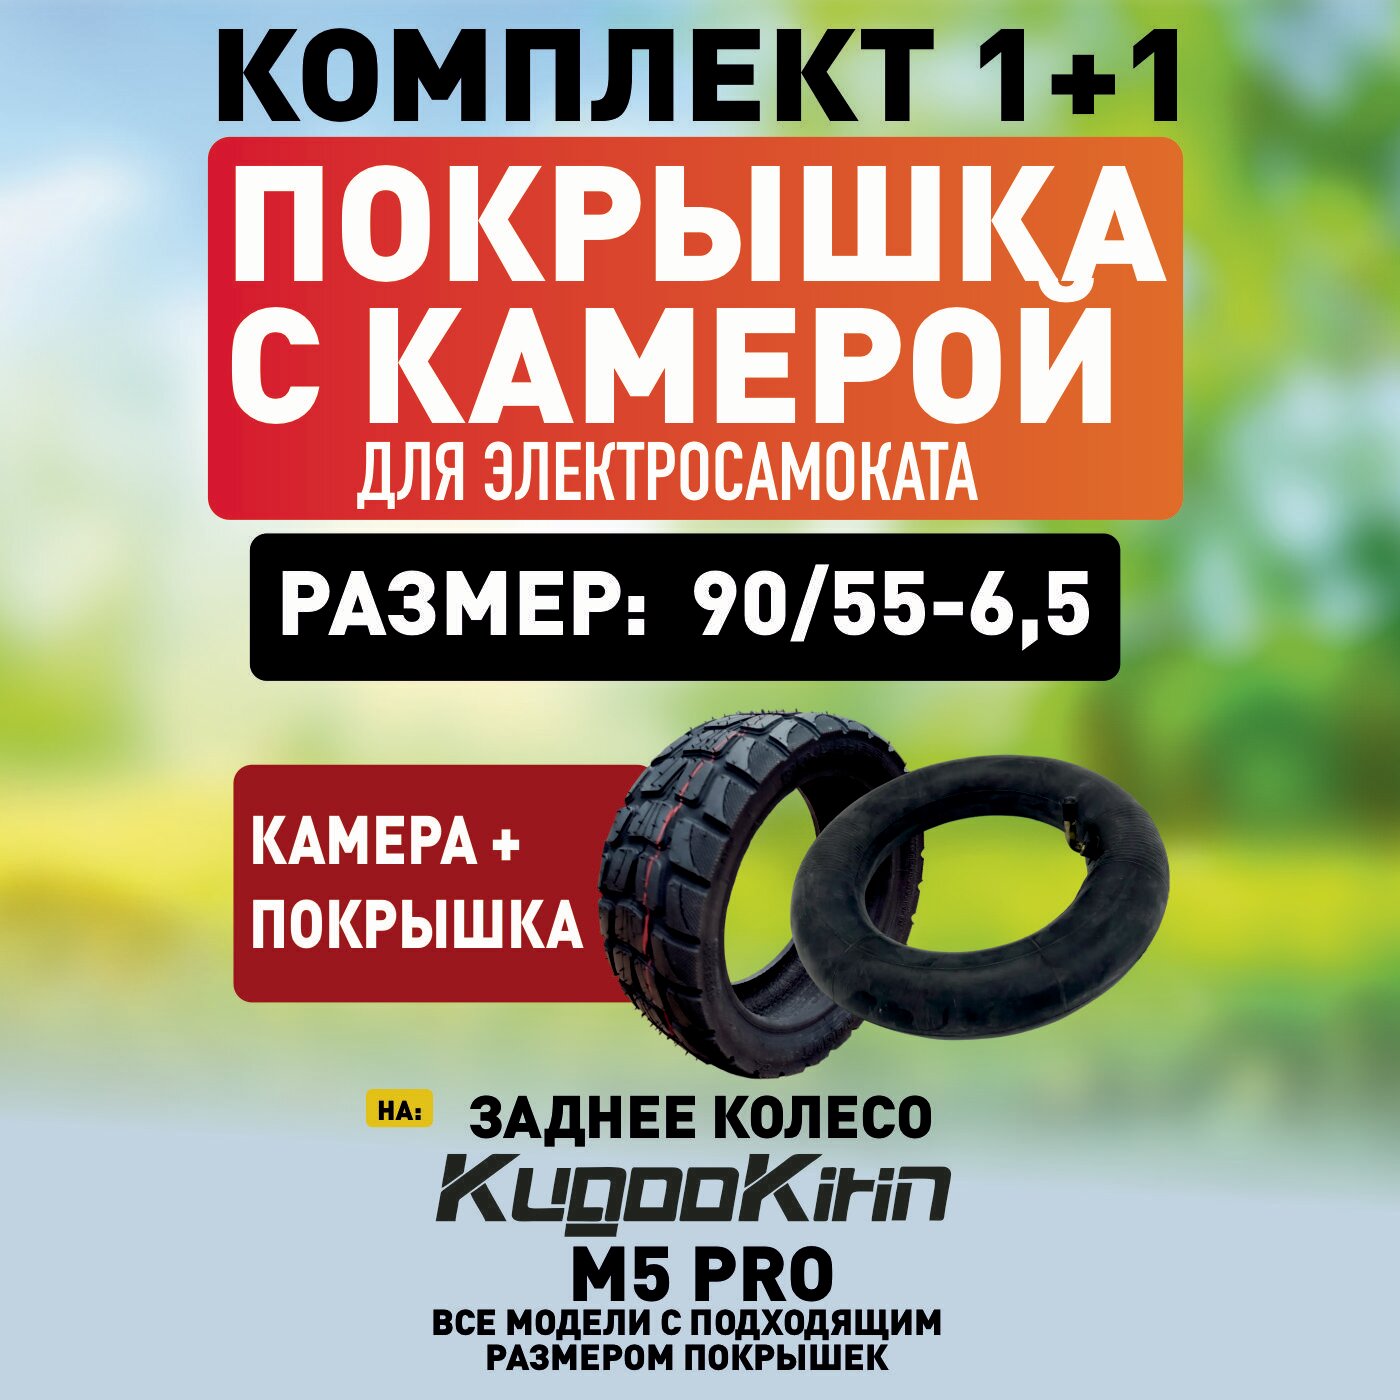 Покрышка+камера на Kugoo M5 PRO , 90/55-6,5 на заднее колесо